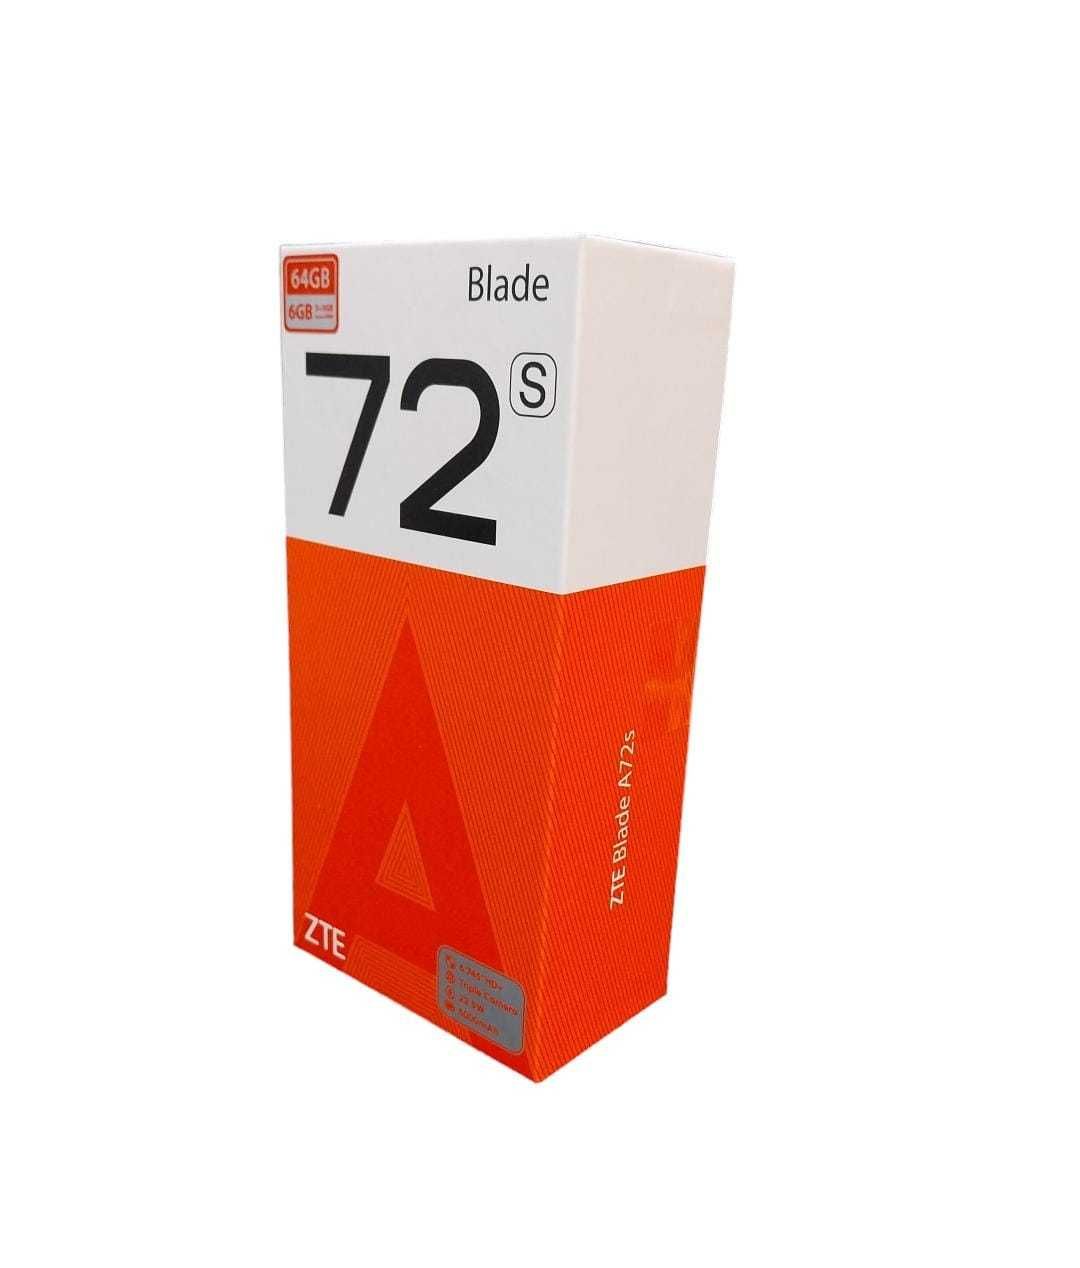 Telefon Zte Blade A72 Cod - 20214 / Amanet Cashbook Braila